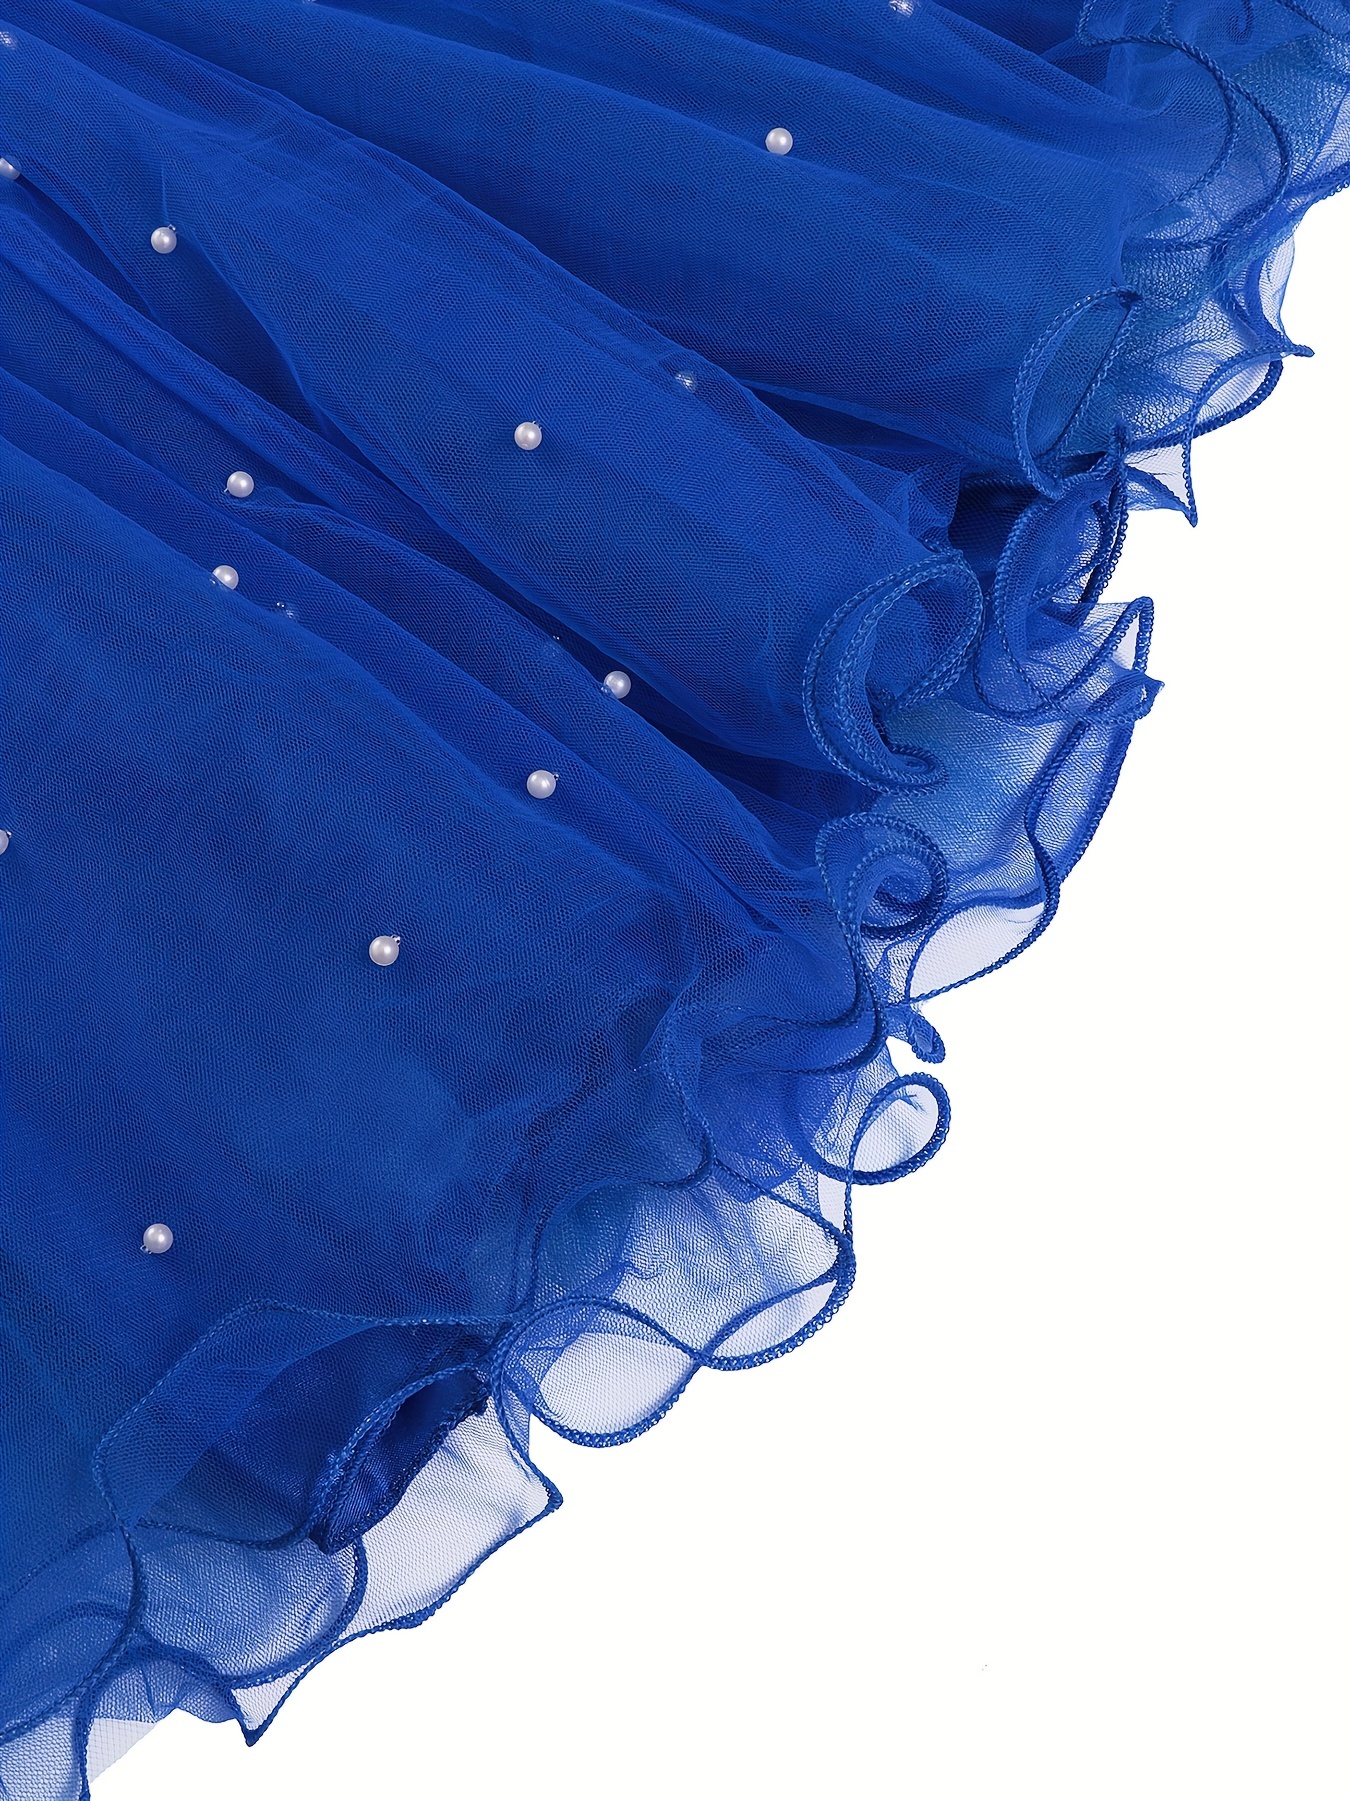 Giovane Principessa in Blu, Elegante Vestito Bianco E Guanti Bianchi  Immagine Stock - Immagine di dolce, vestito: 178791485